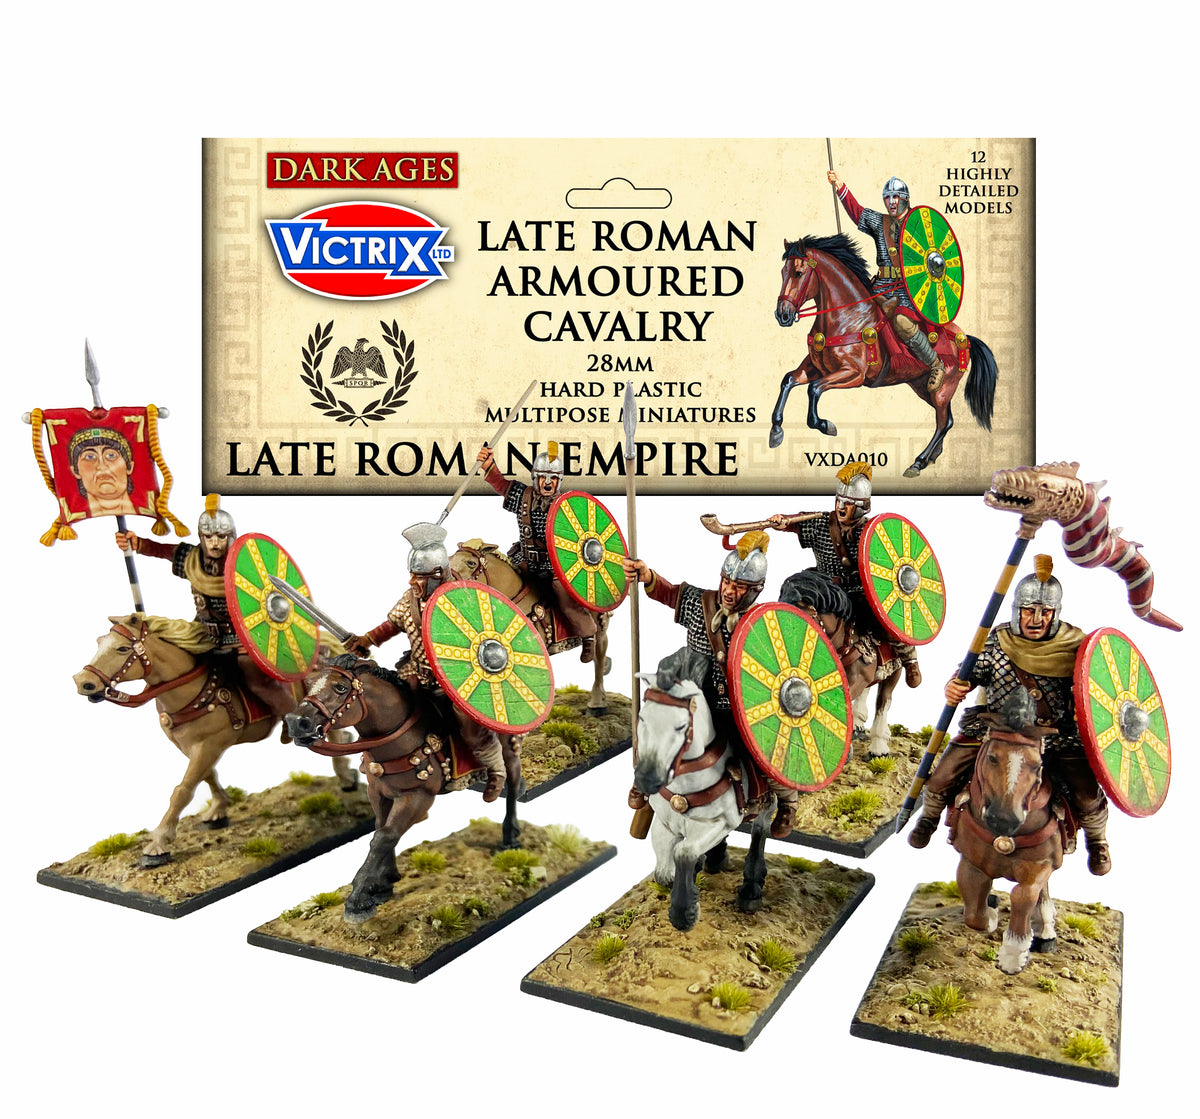 Caballería blindada romana tardía